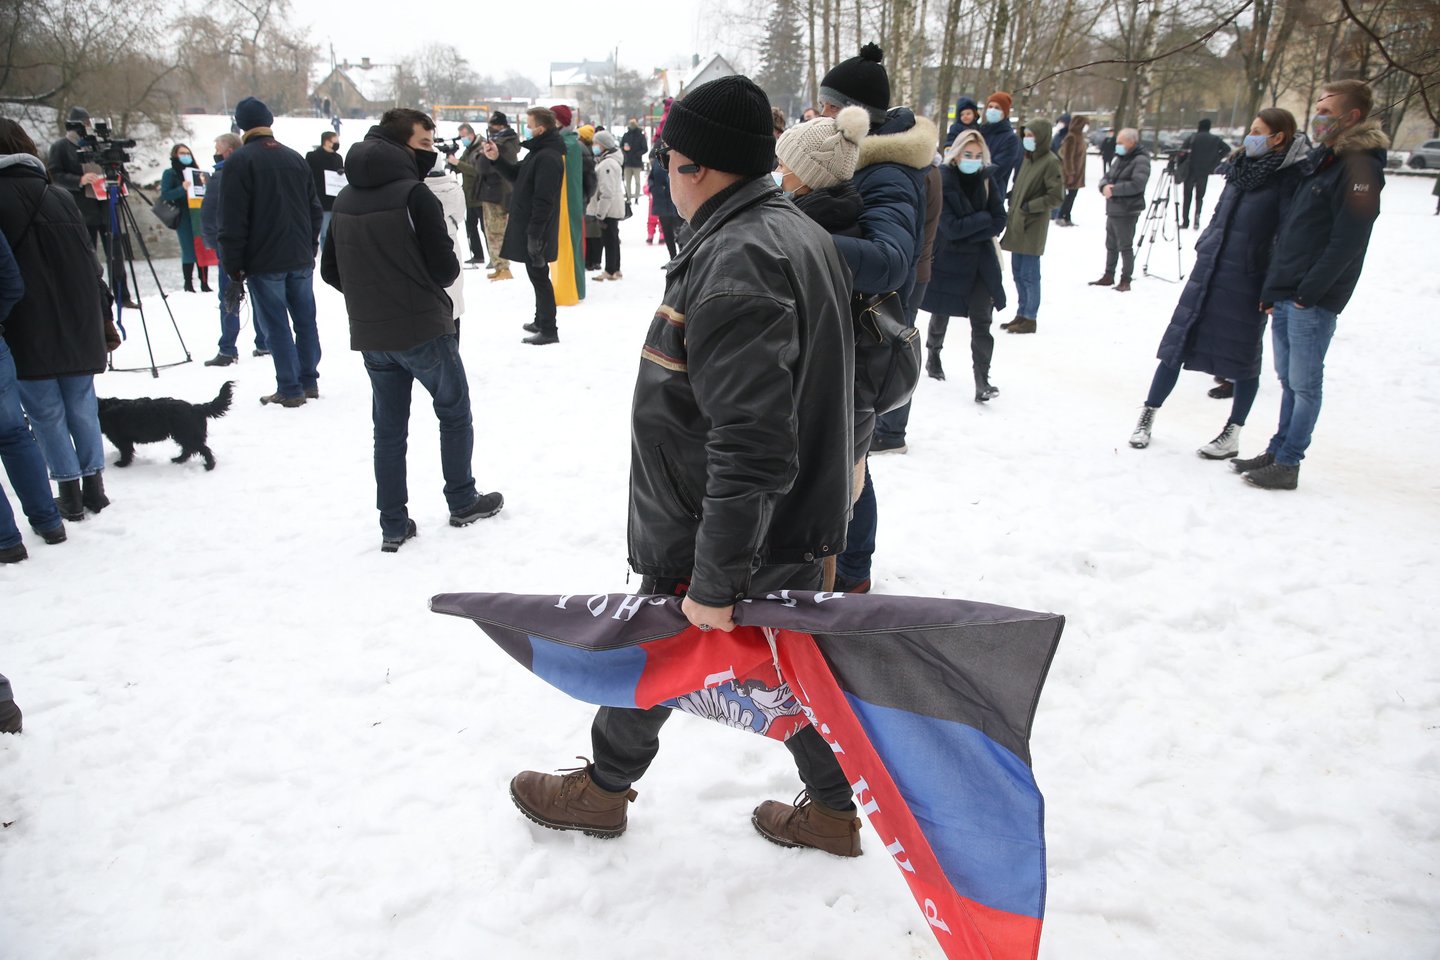  Akcijoje policija sulaikė vieną asmenį, atsinešusį tarptautinės bendruomenės nepripažįstamos separatistinės Donecko respublikos vėliavą bei siekusį sutrukdyti akciją.<br> R.Danisevičiaus nuotr.